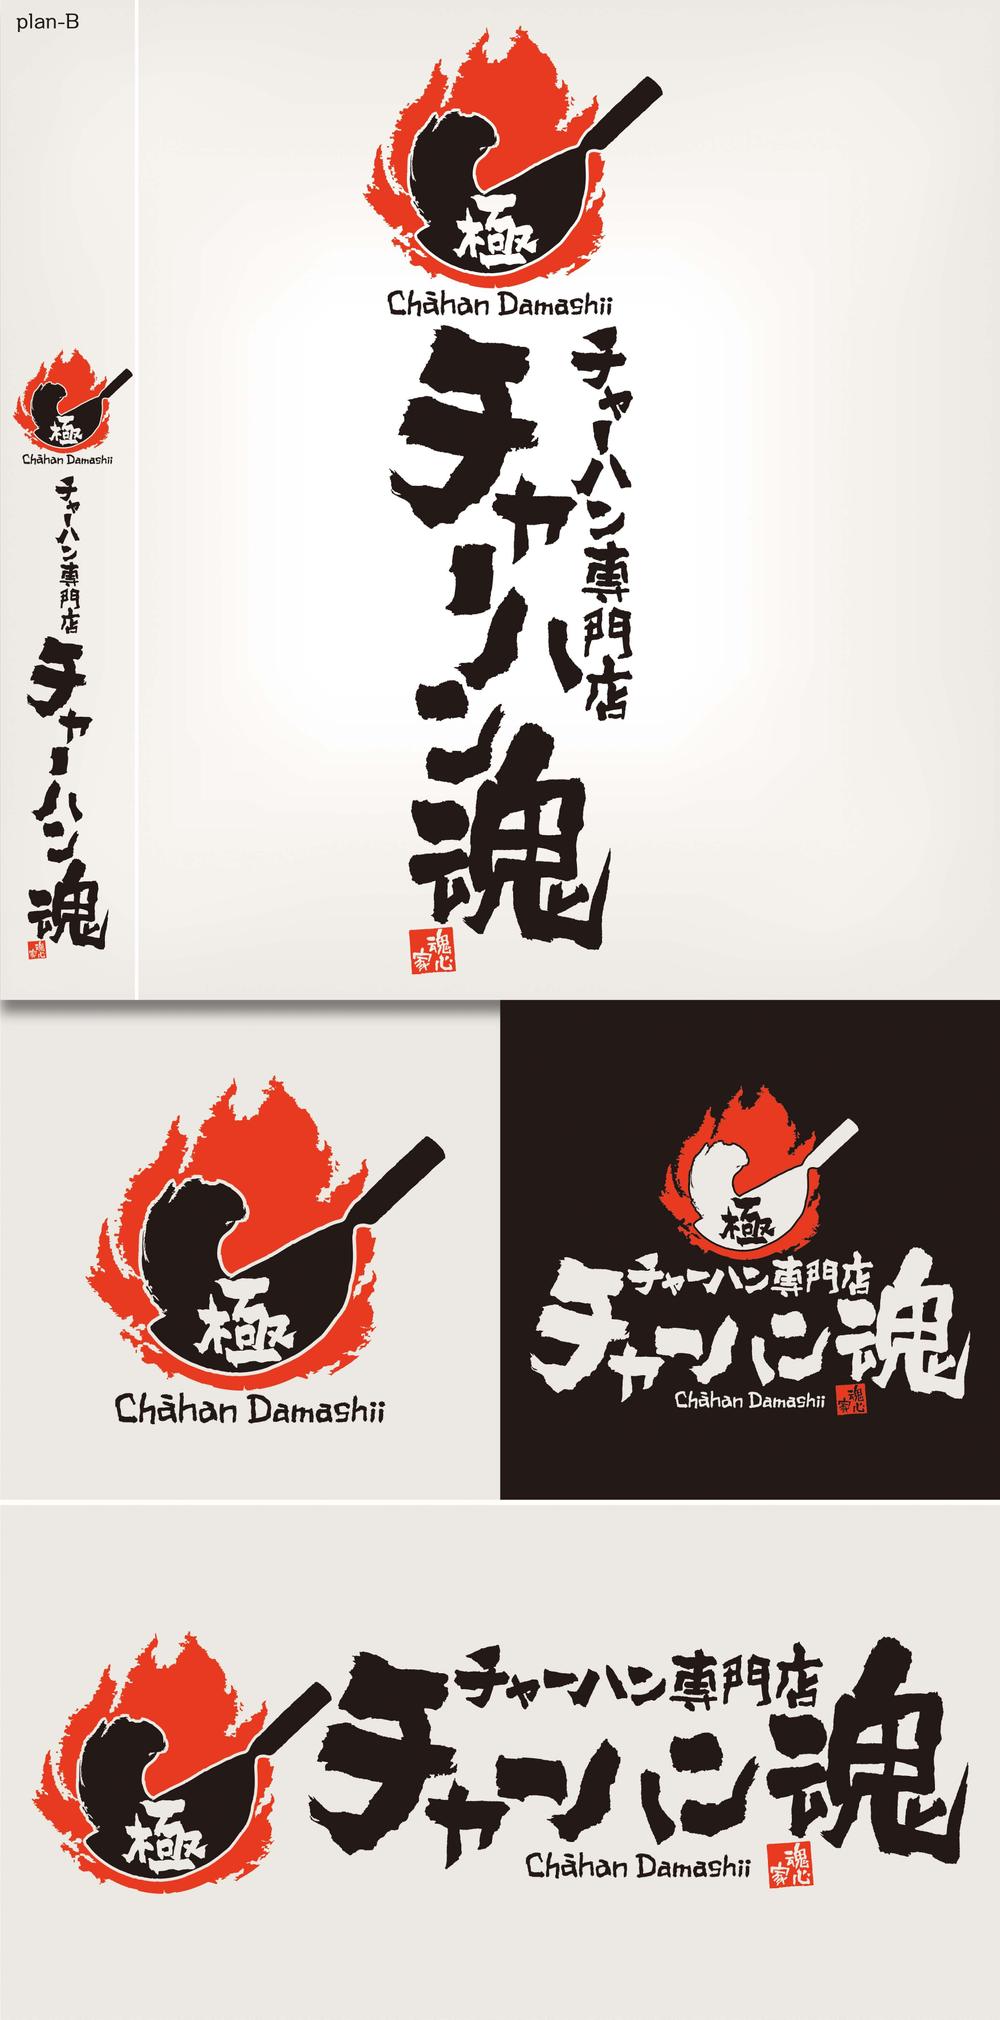 チャーハン専門店 「チャーハン 魂」のロゴ